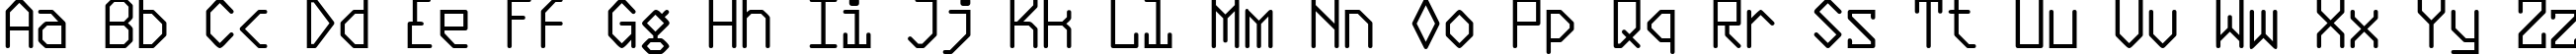 Пример написания английского алфавита шрифтом Plasmatic